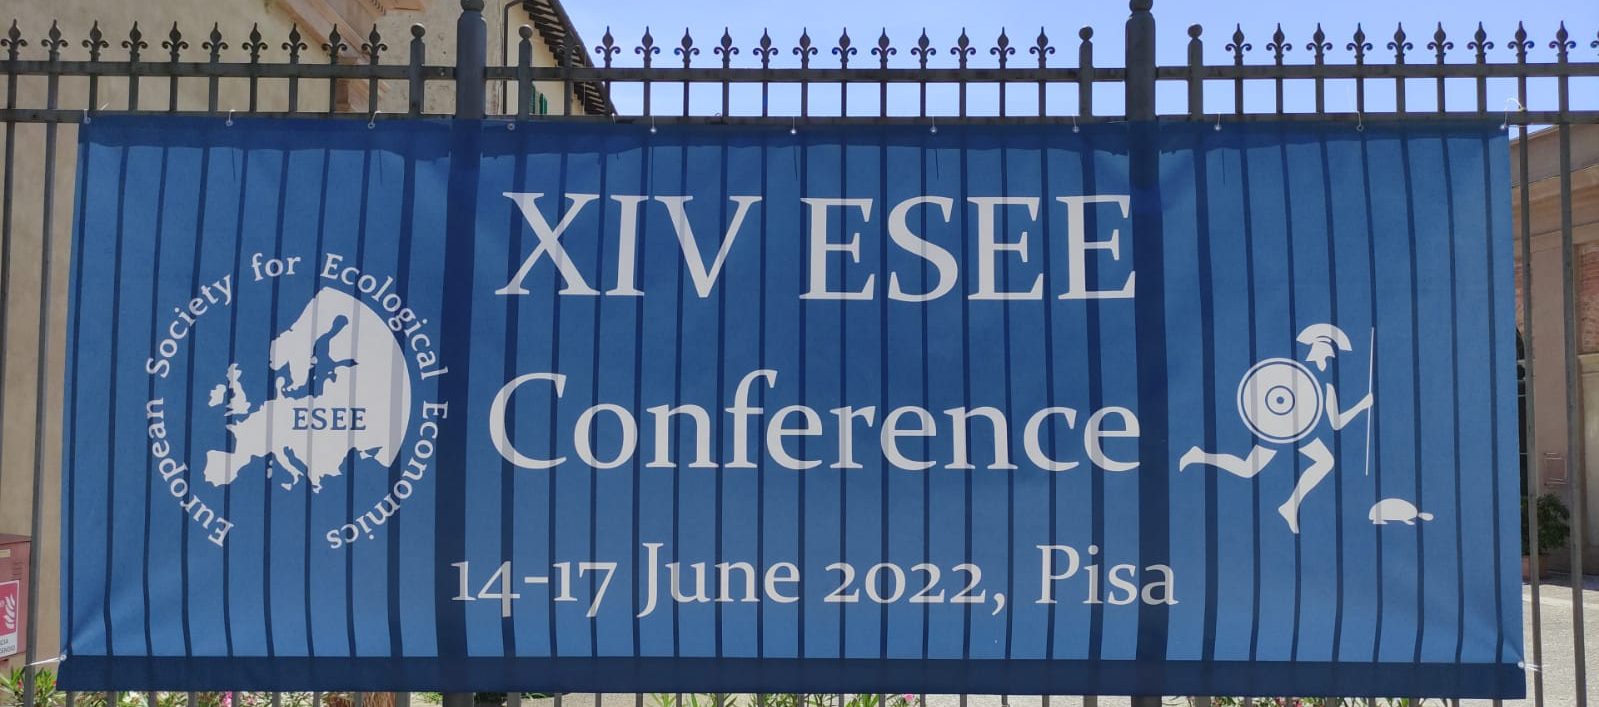 Un bilancio della XIV conferenza della Società Europea per l’Economia Ecologica, a Pisa dal 14-17 giugno 2022